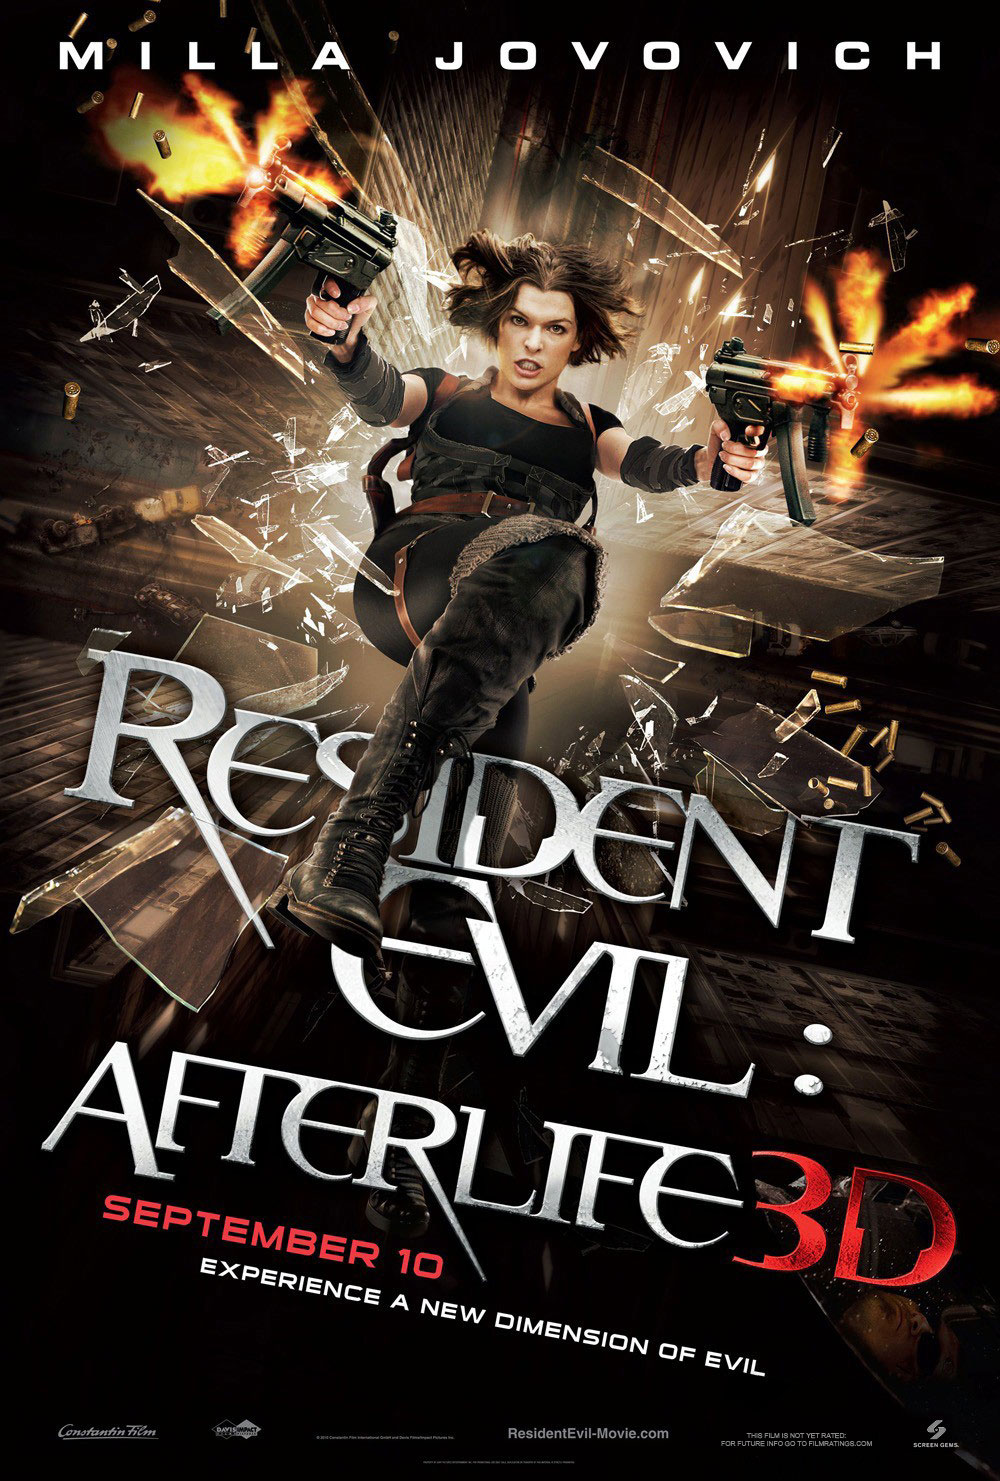 Resident Evil Afterlife ผีชีวะ 4 สงครามแตกพันธุ์ไวรัส (2010)